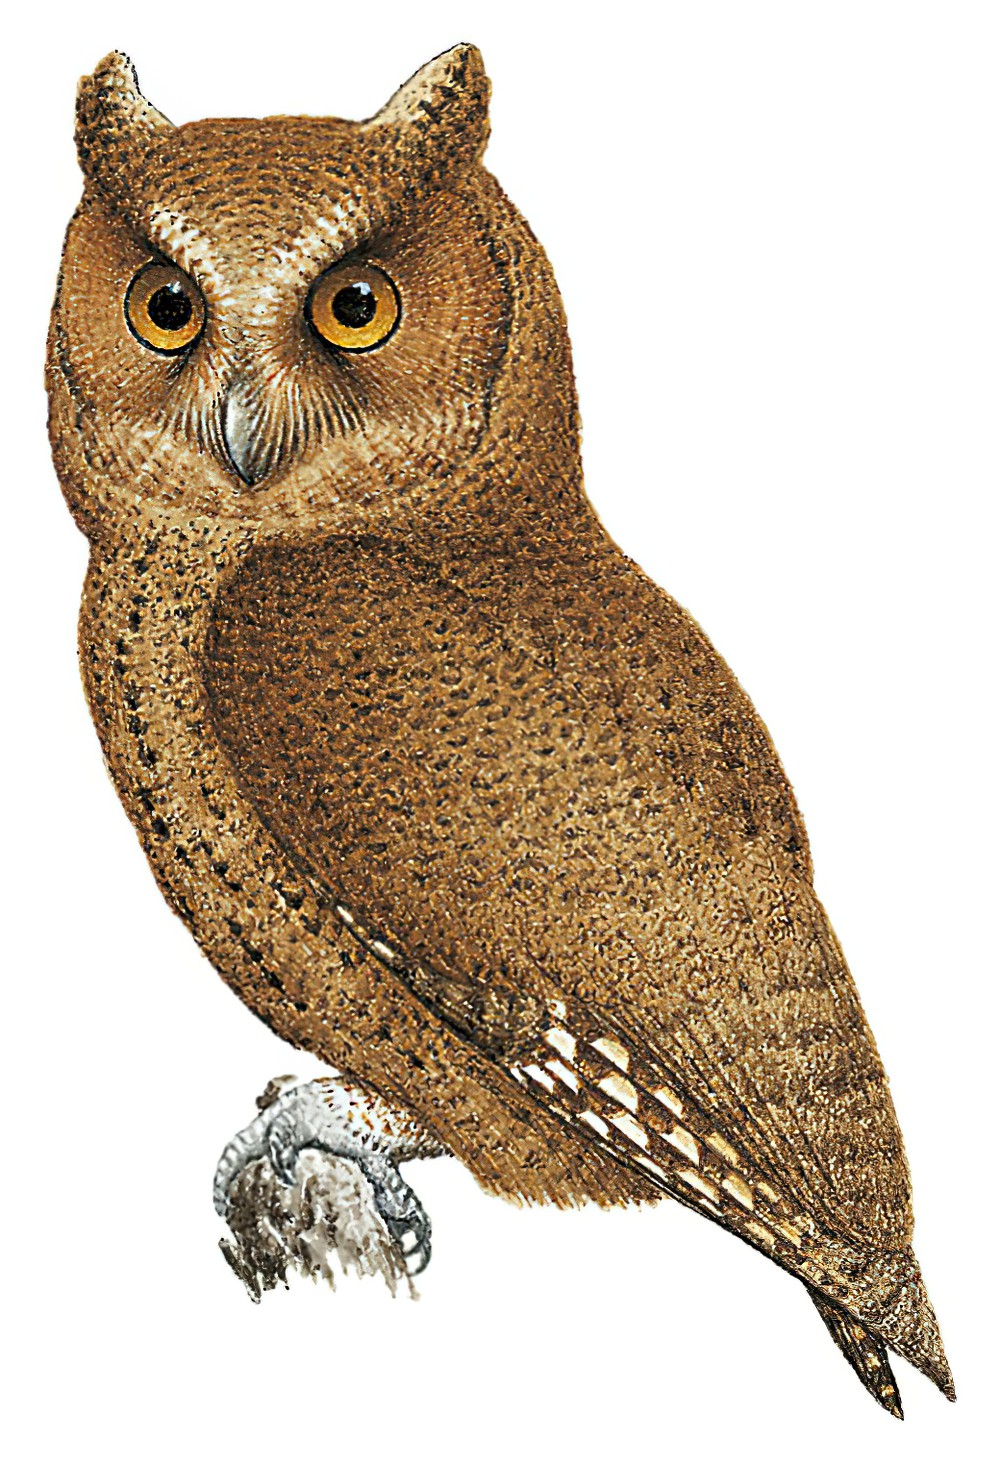 巴拉望角鸮 / Palawan Scops Owl / Otus fuliginosus